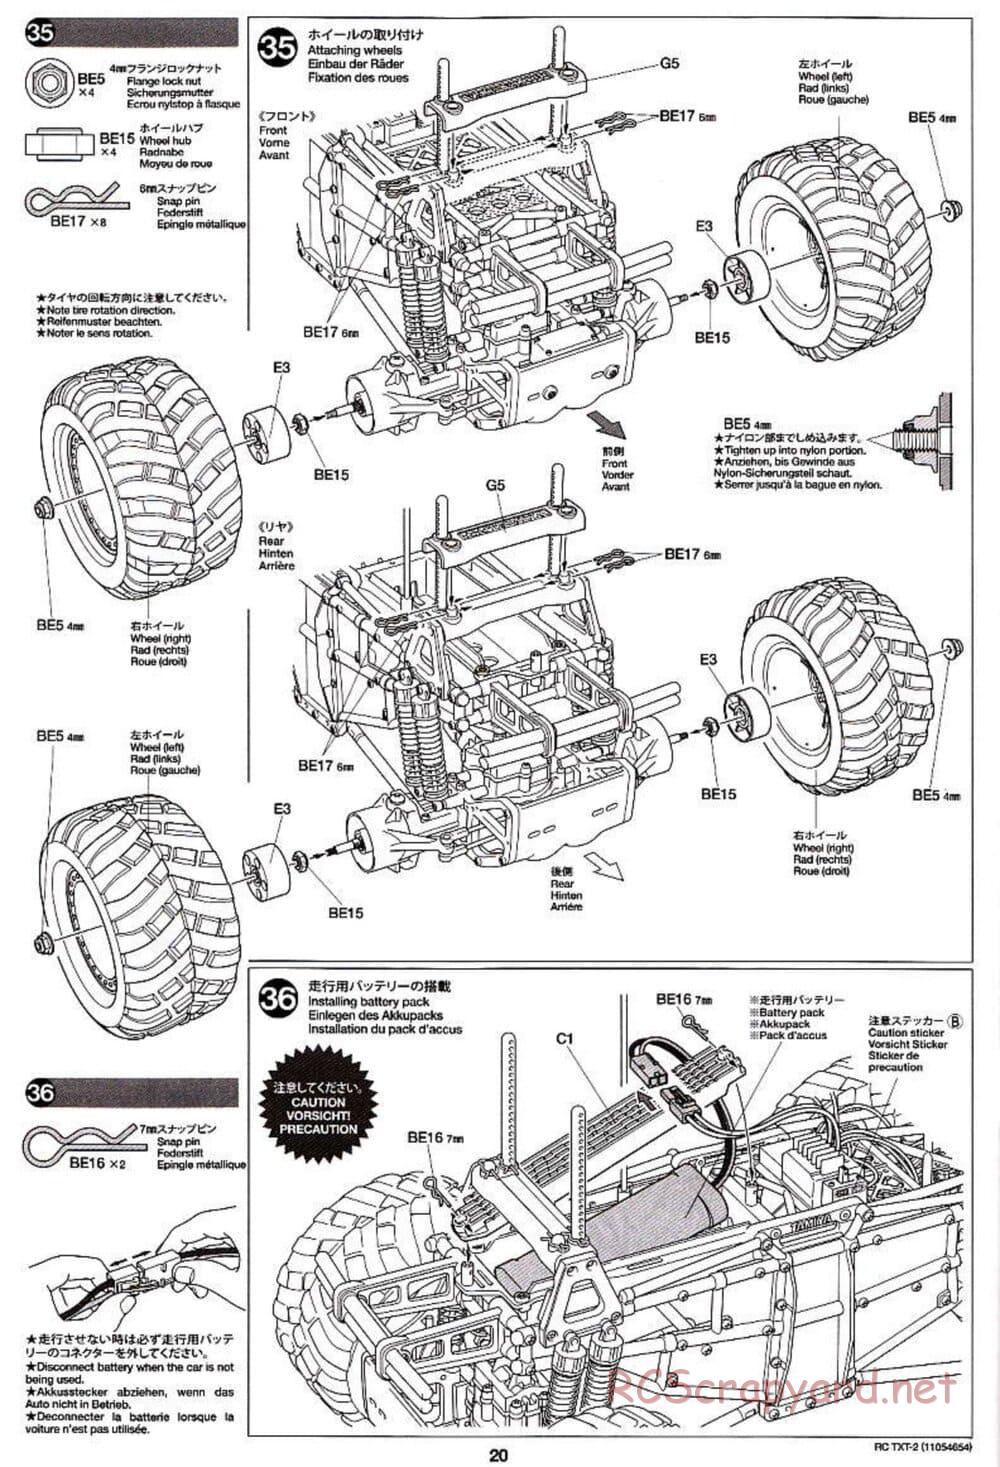 Tamiya - TXT-2 Chassis - Manual - Page 20